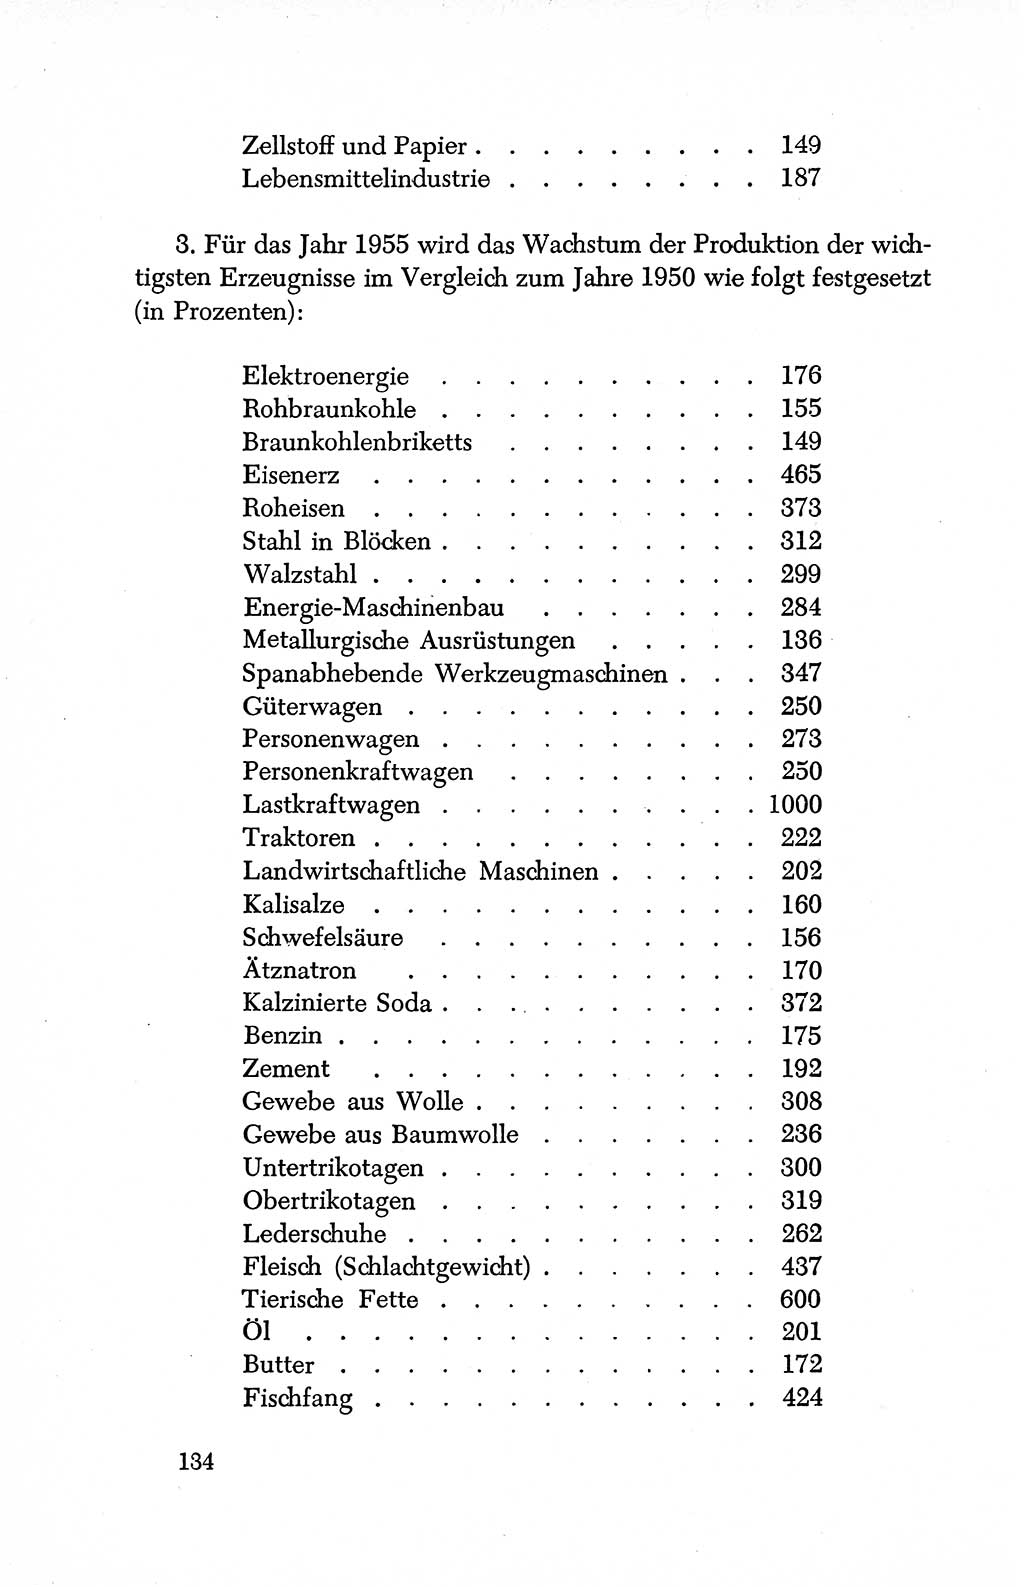 Dokumente der Sozialistischen Einheitspartei Deutschlands (SED) [Deutsche Demokratische Republik (DDR)] 1950-1952, Seite 134 (Dok. SED DDR 1950-1952, S. 134)